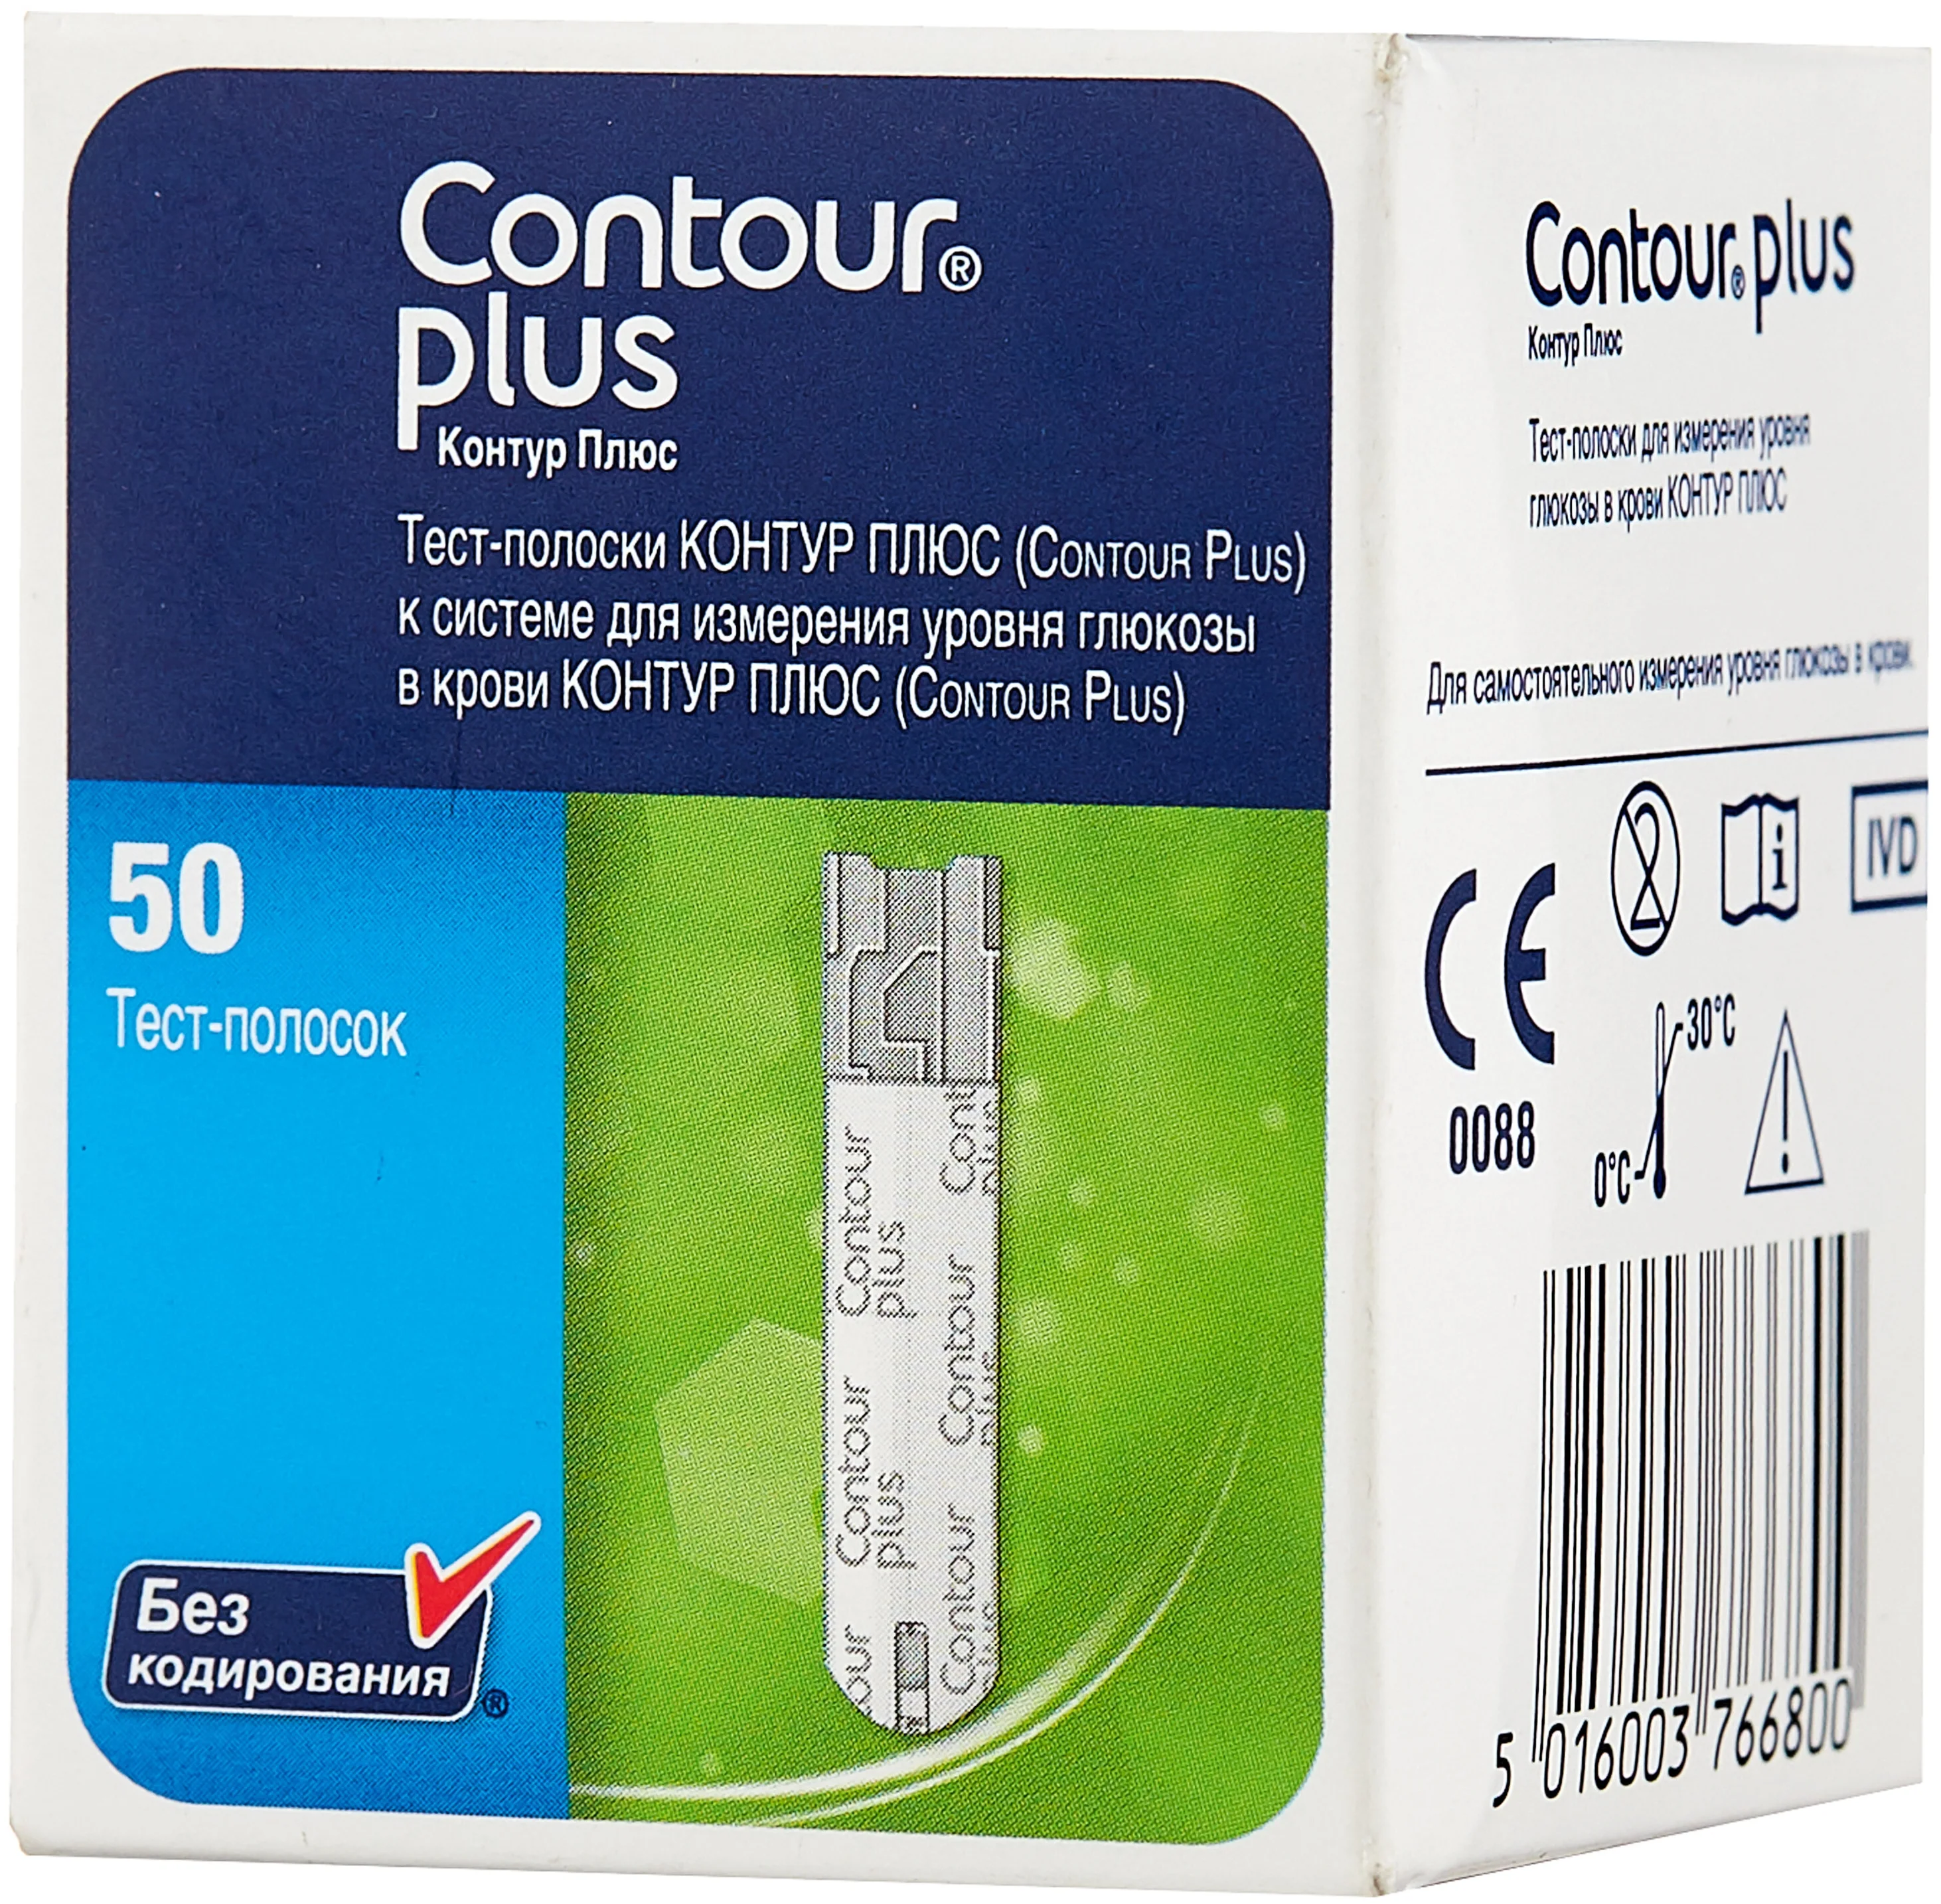 Contour Plus - назначение: для глюкометра